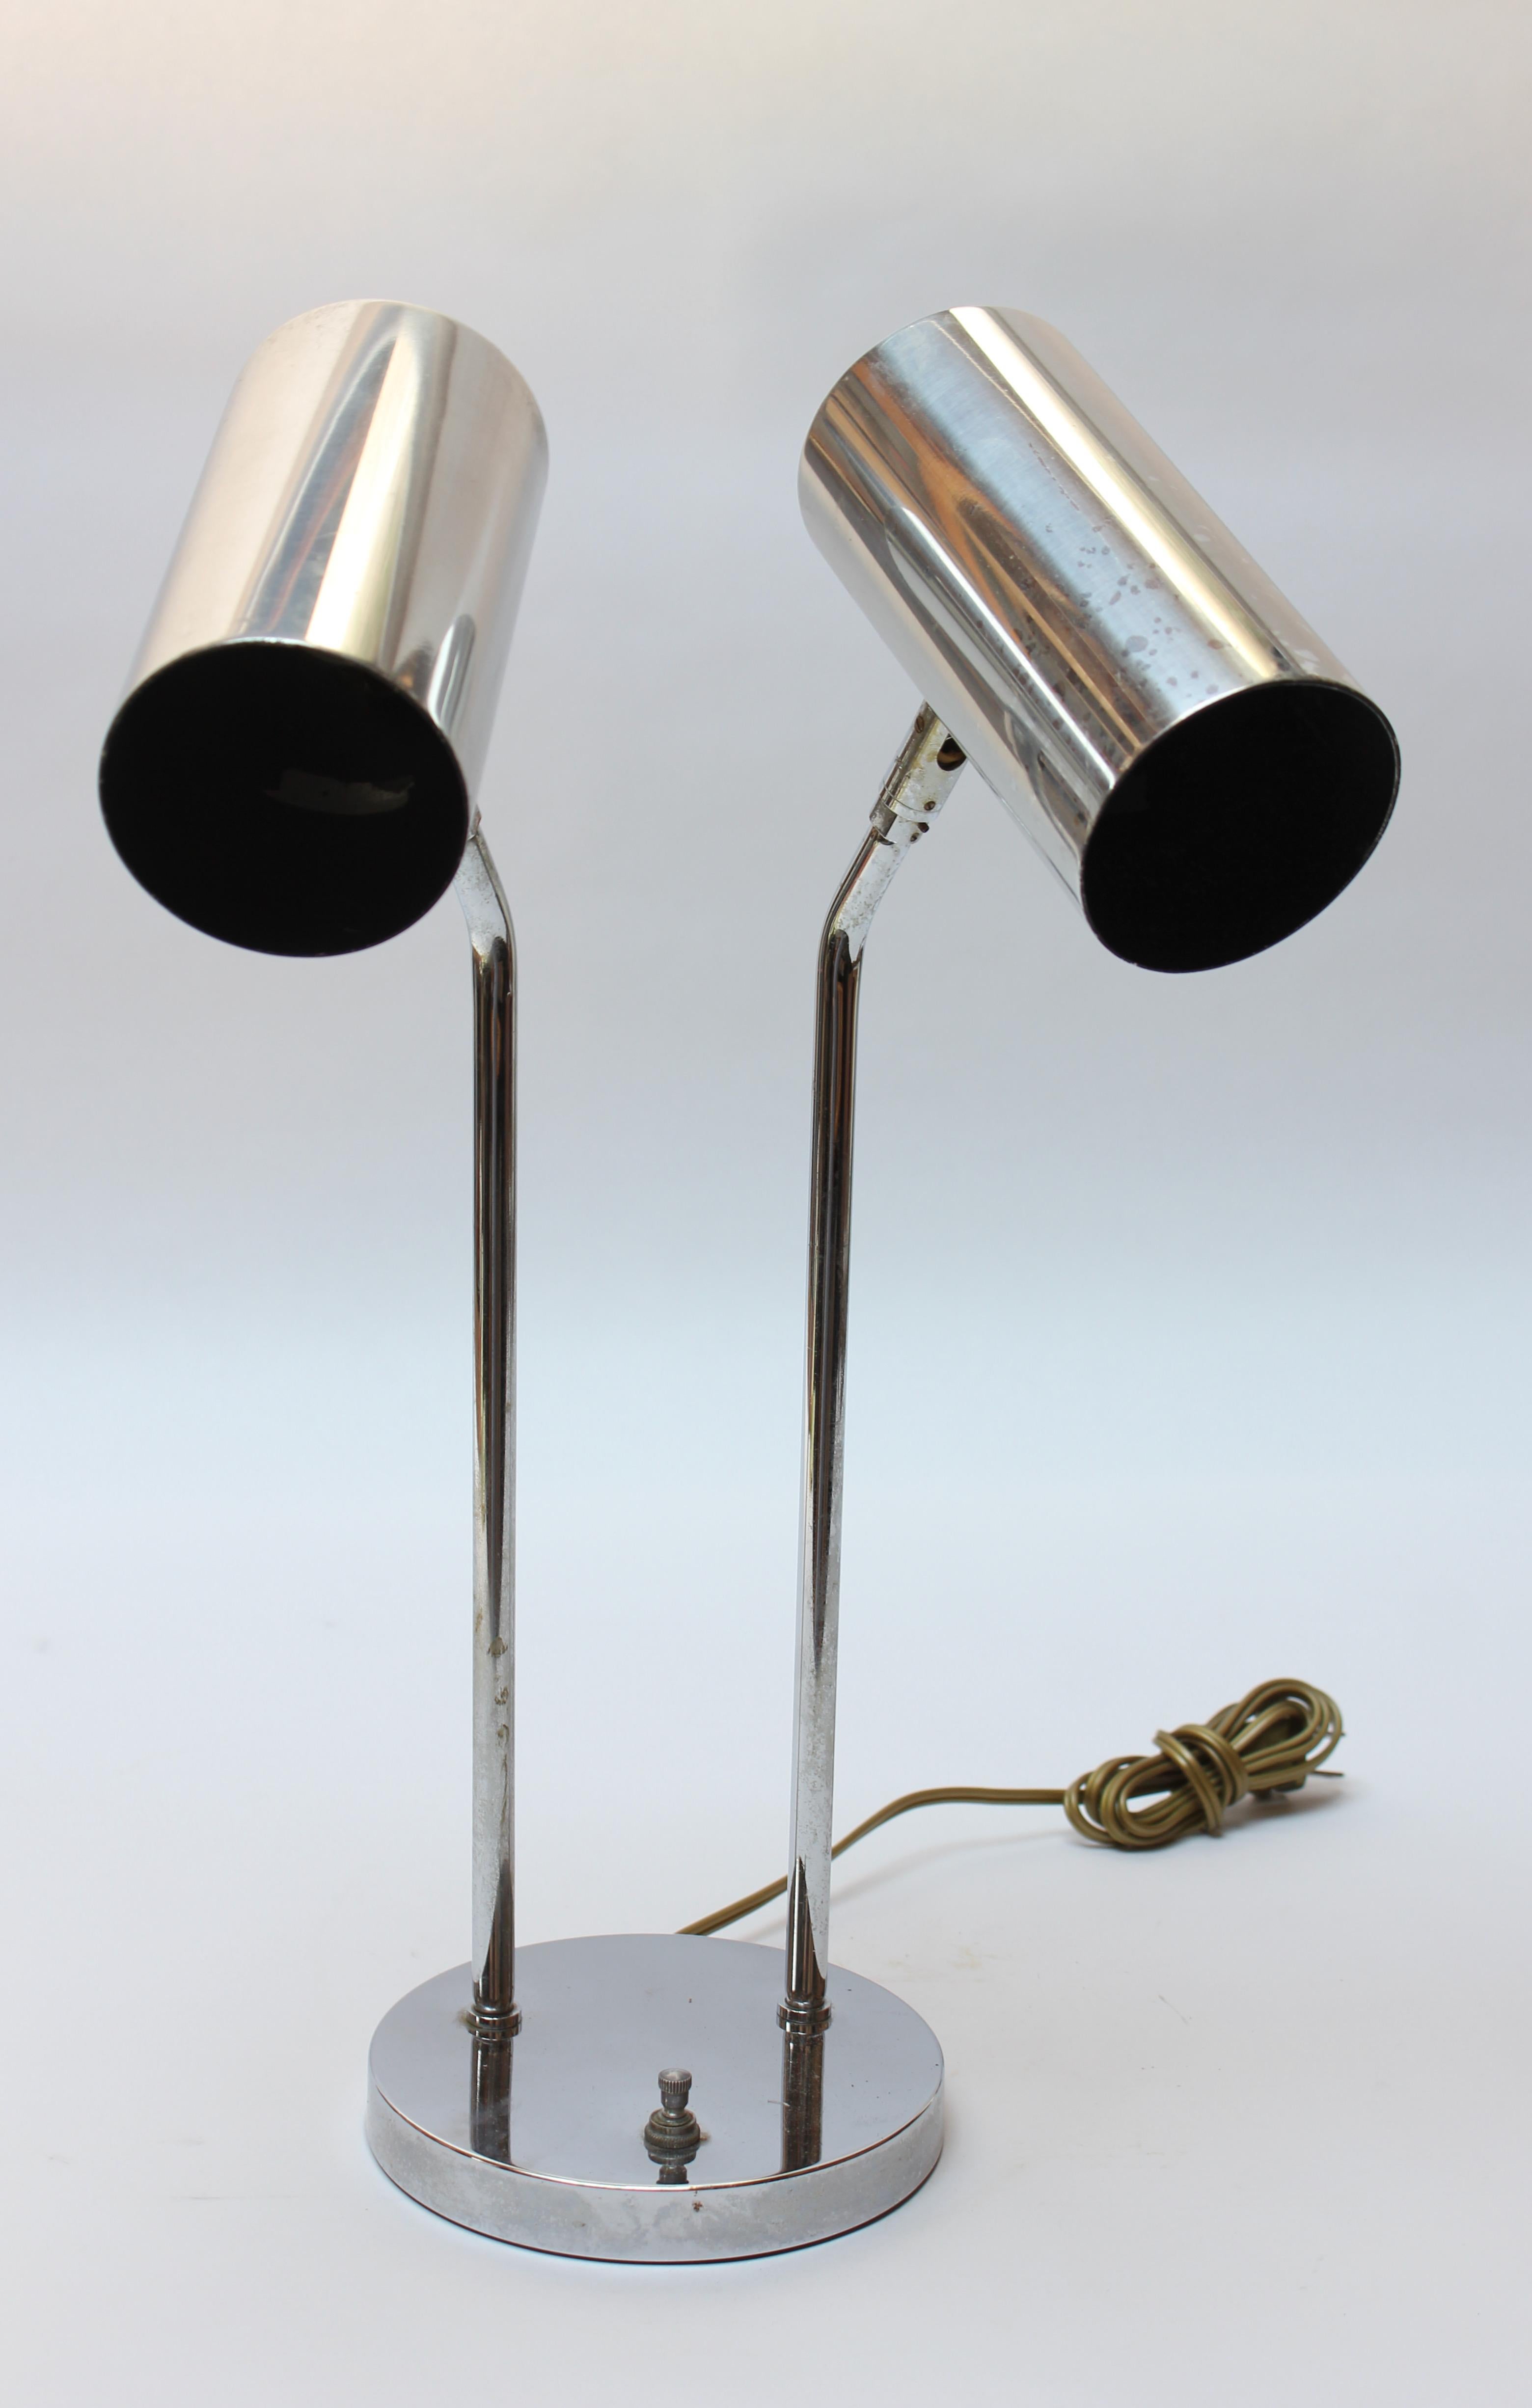 Lampe de table en chrome de Robert Sonneman pour Koch & Lowy (vers les années 1970). Composé de deux abat-jours cylindriques pivotants soutenus par des tiges tubulaires chromées et d'une base ronde avec un seul interrupteur marche/arrêt qui permet